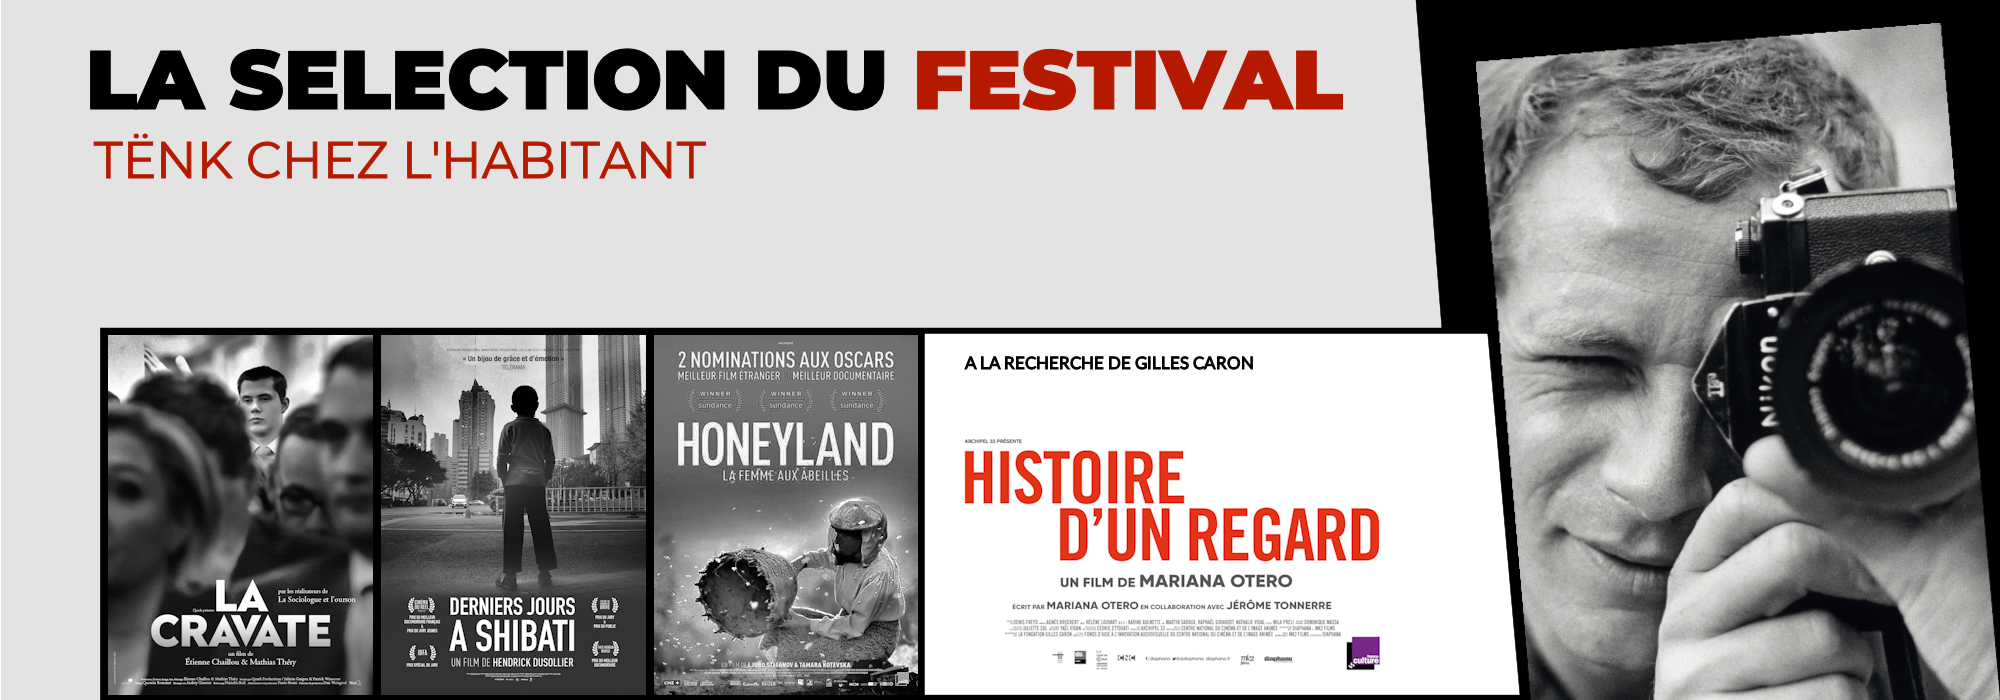 Bandeau_Film_Festival_Programmation_2000x730